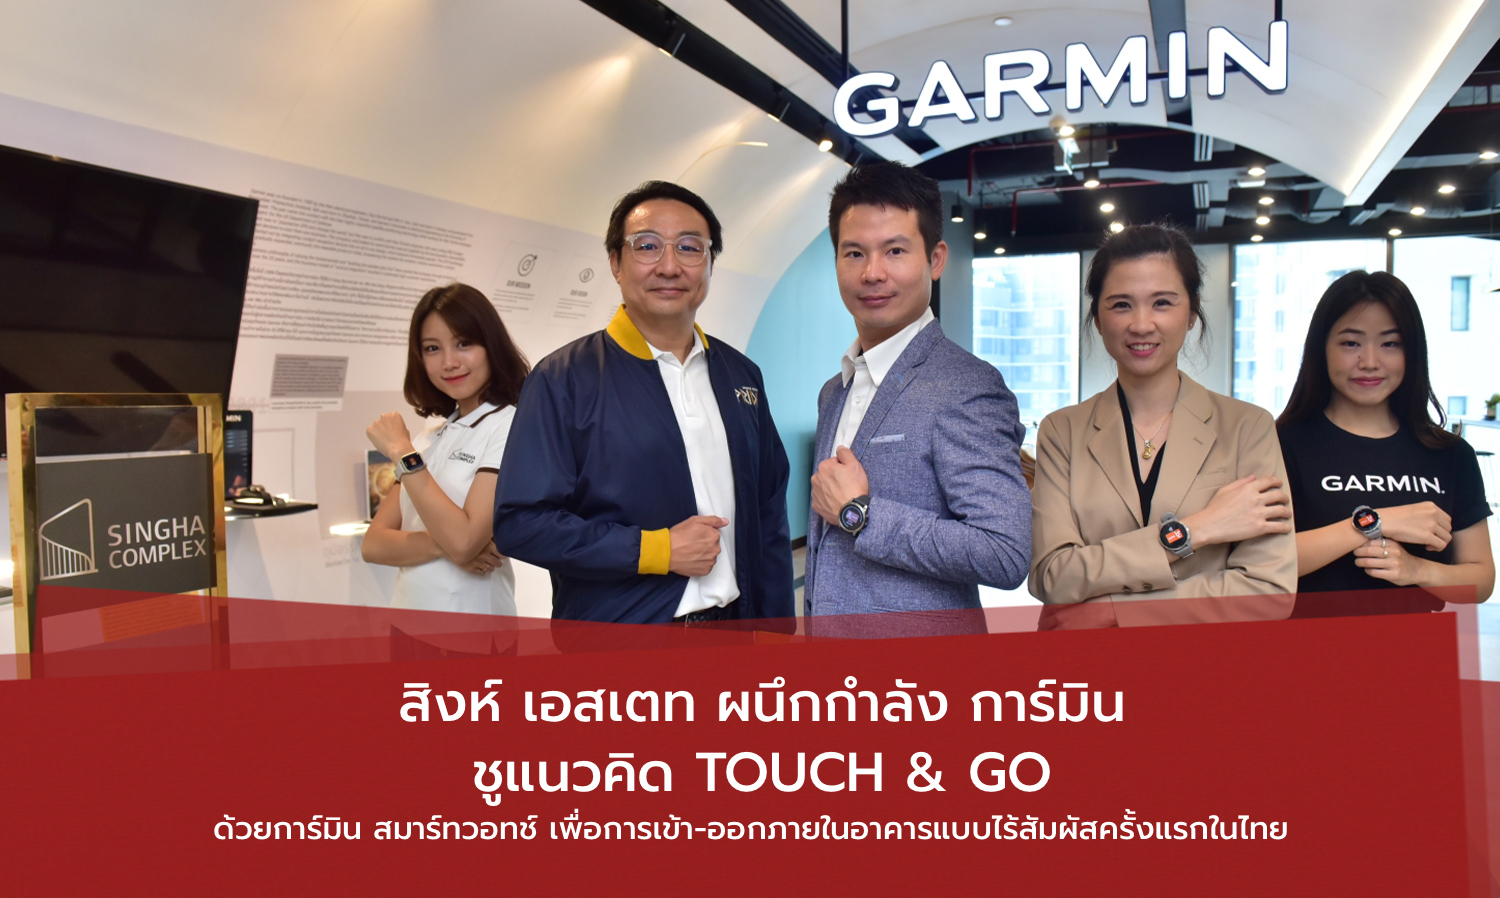 สิงห์ เอสเตท ผนึกกำลัง การ์มิน ชูแนวคิด Touch & Go ด้วยการ์มิน สมาร์ทวอทช์ เพื่อการเข้า-ออกภายในอาคารแบบไร้สัมผัสครั้งแรกในไทย  